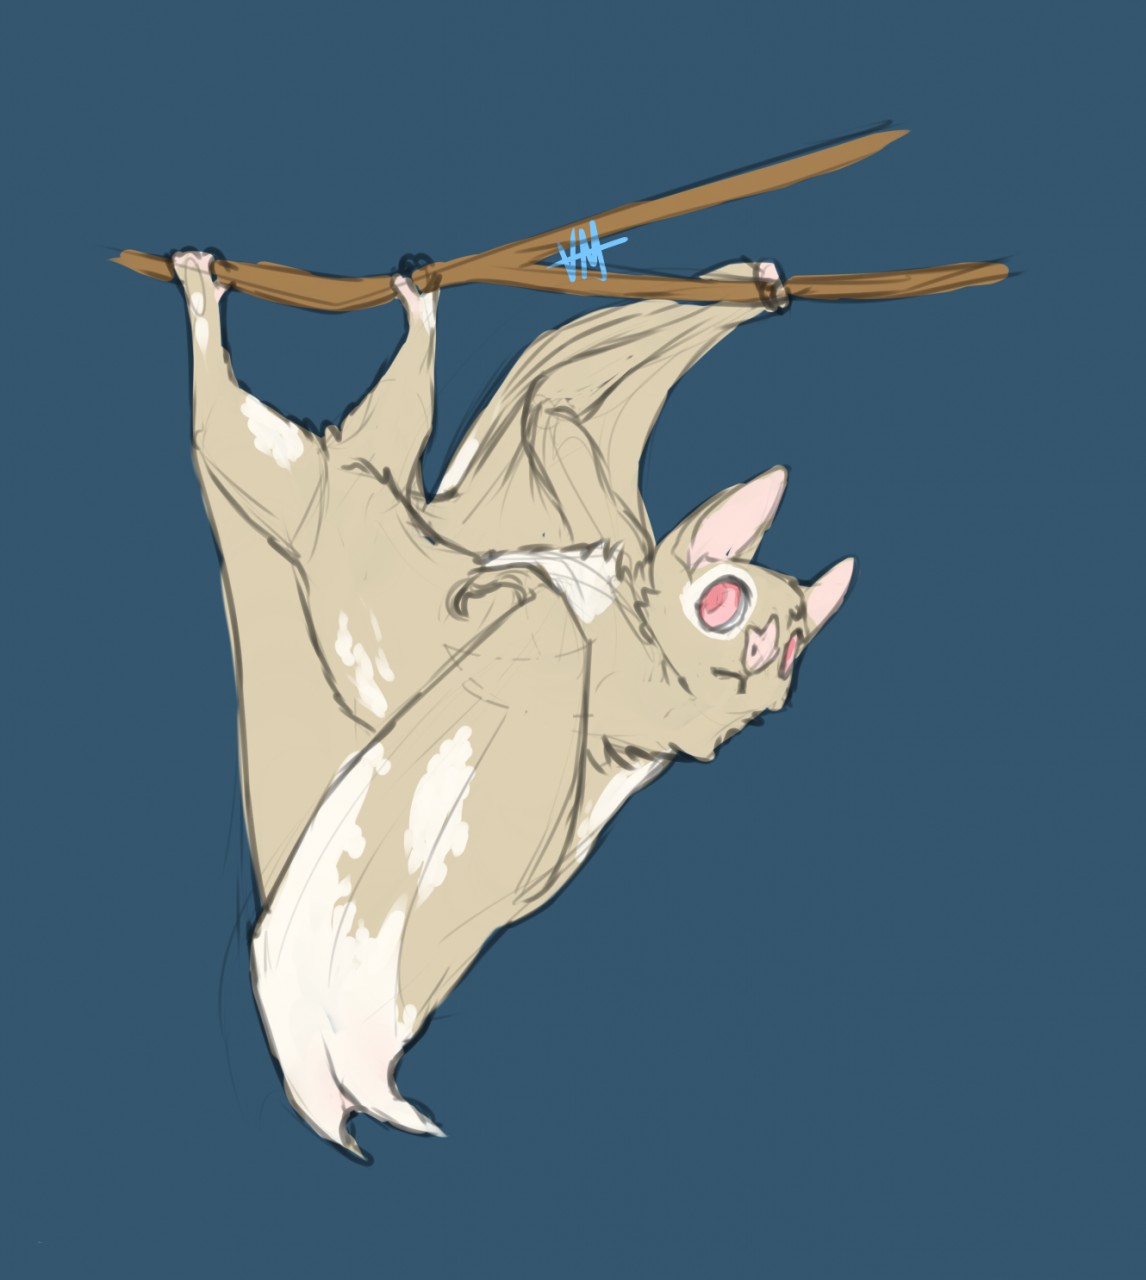 Yiff bat